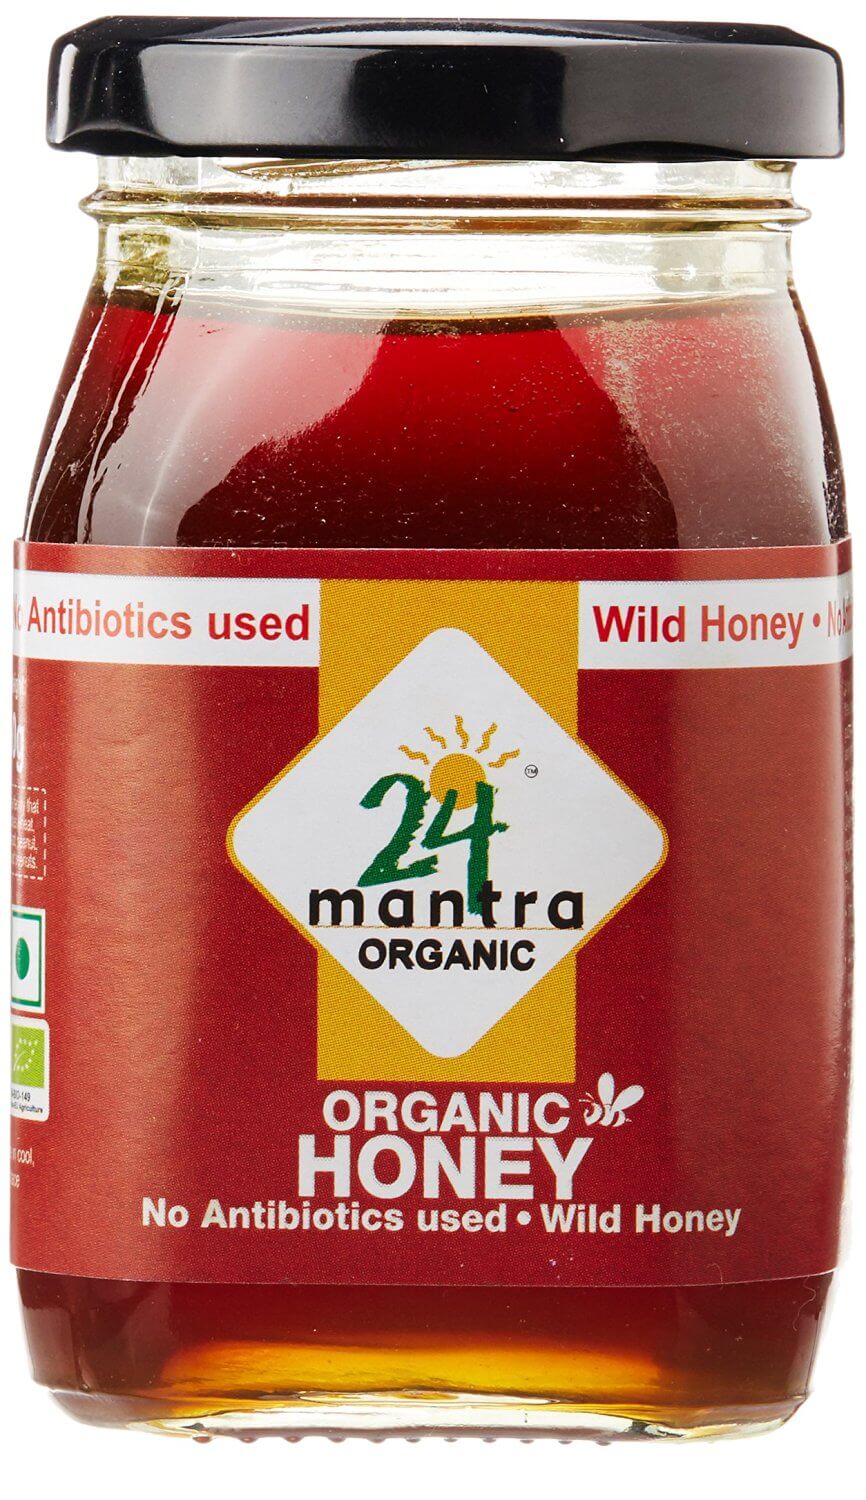 24 Mantra Organic Honey 250g VizagShop.com